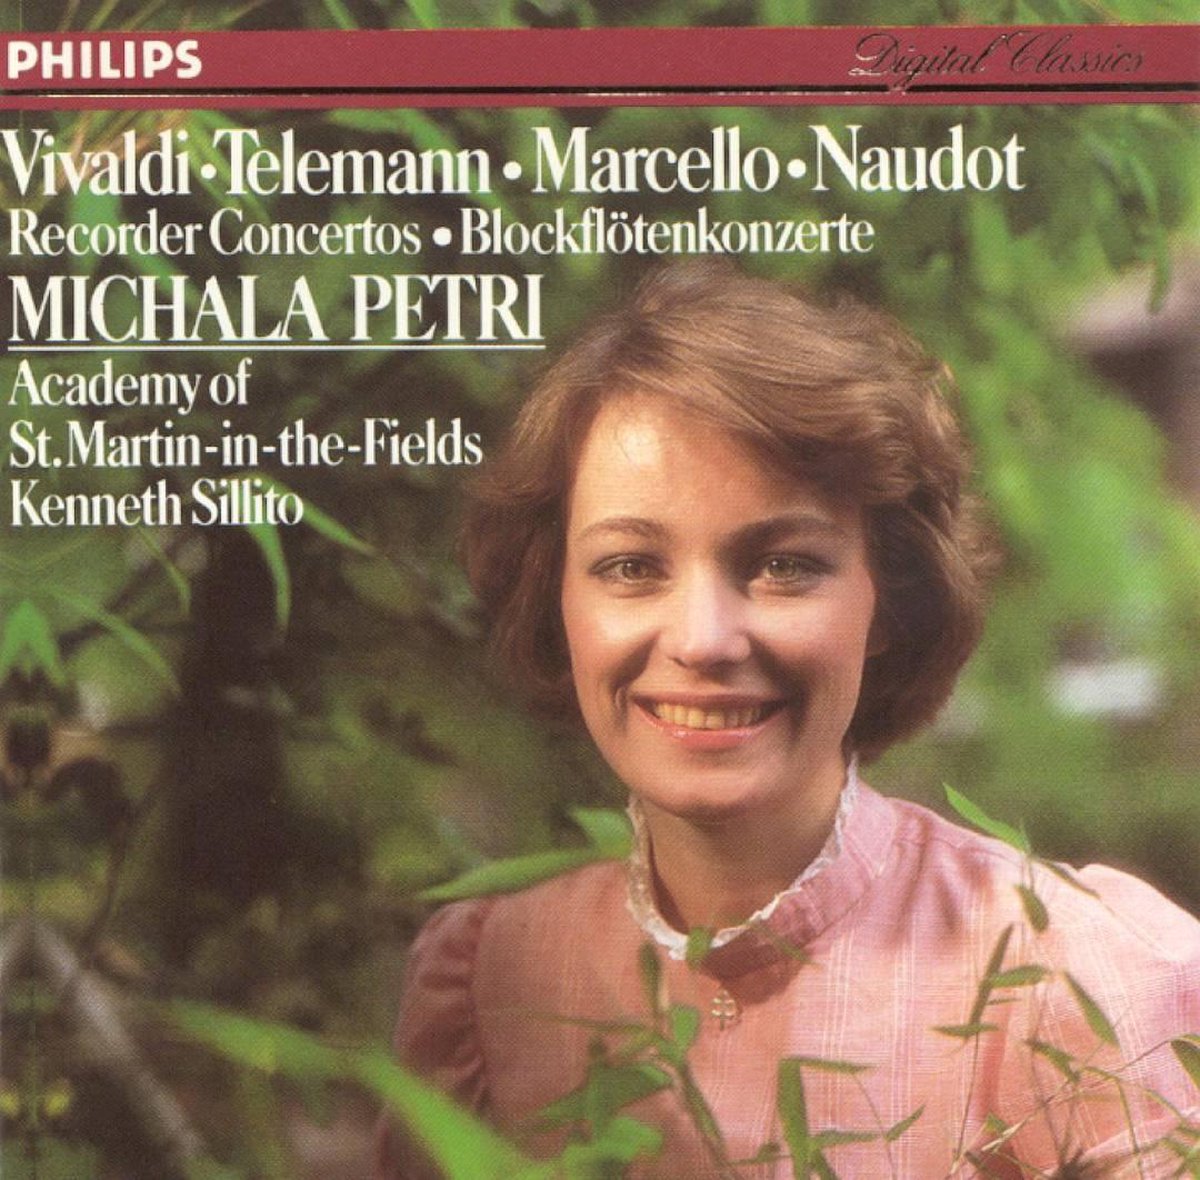 Recorder Concertos by Marcello, Vivaldi, Telemann & Naudot - Michala Petri